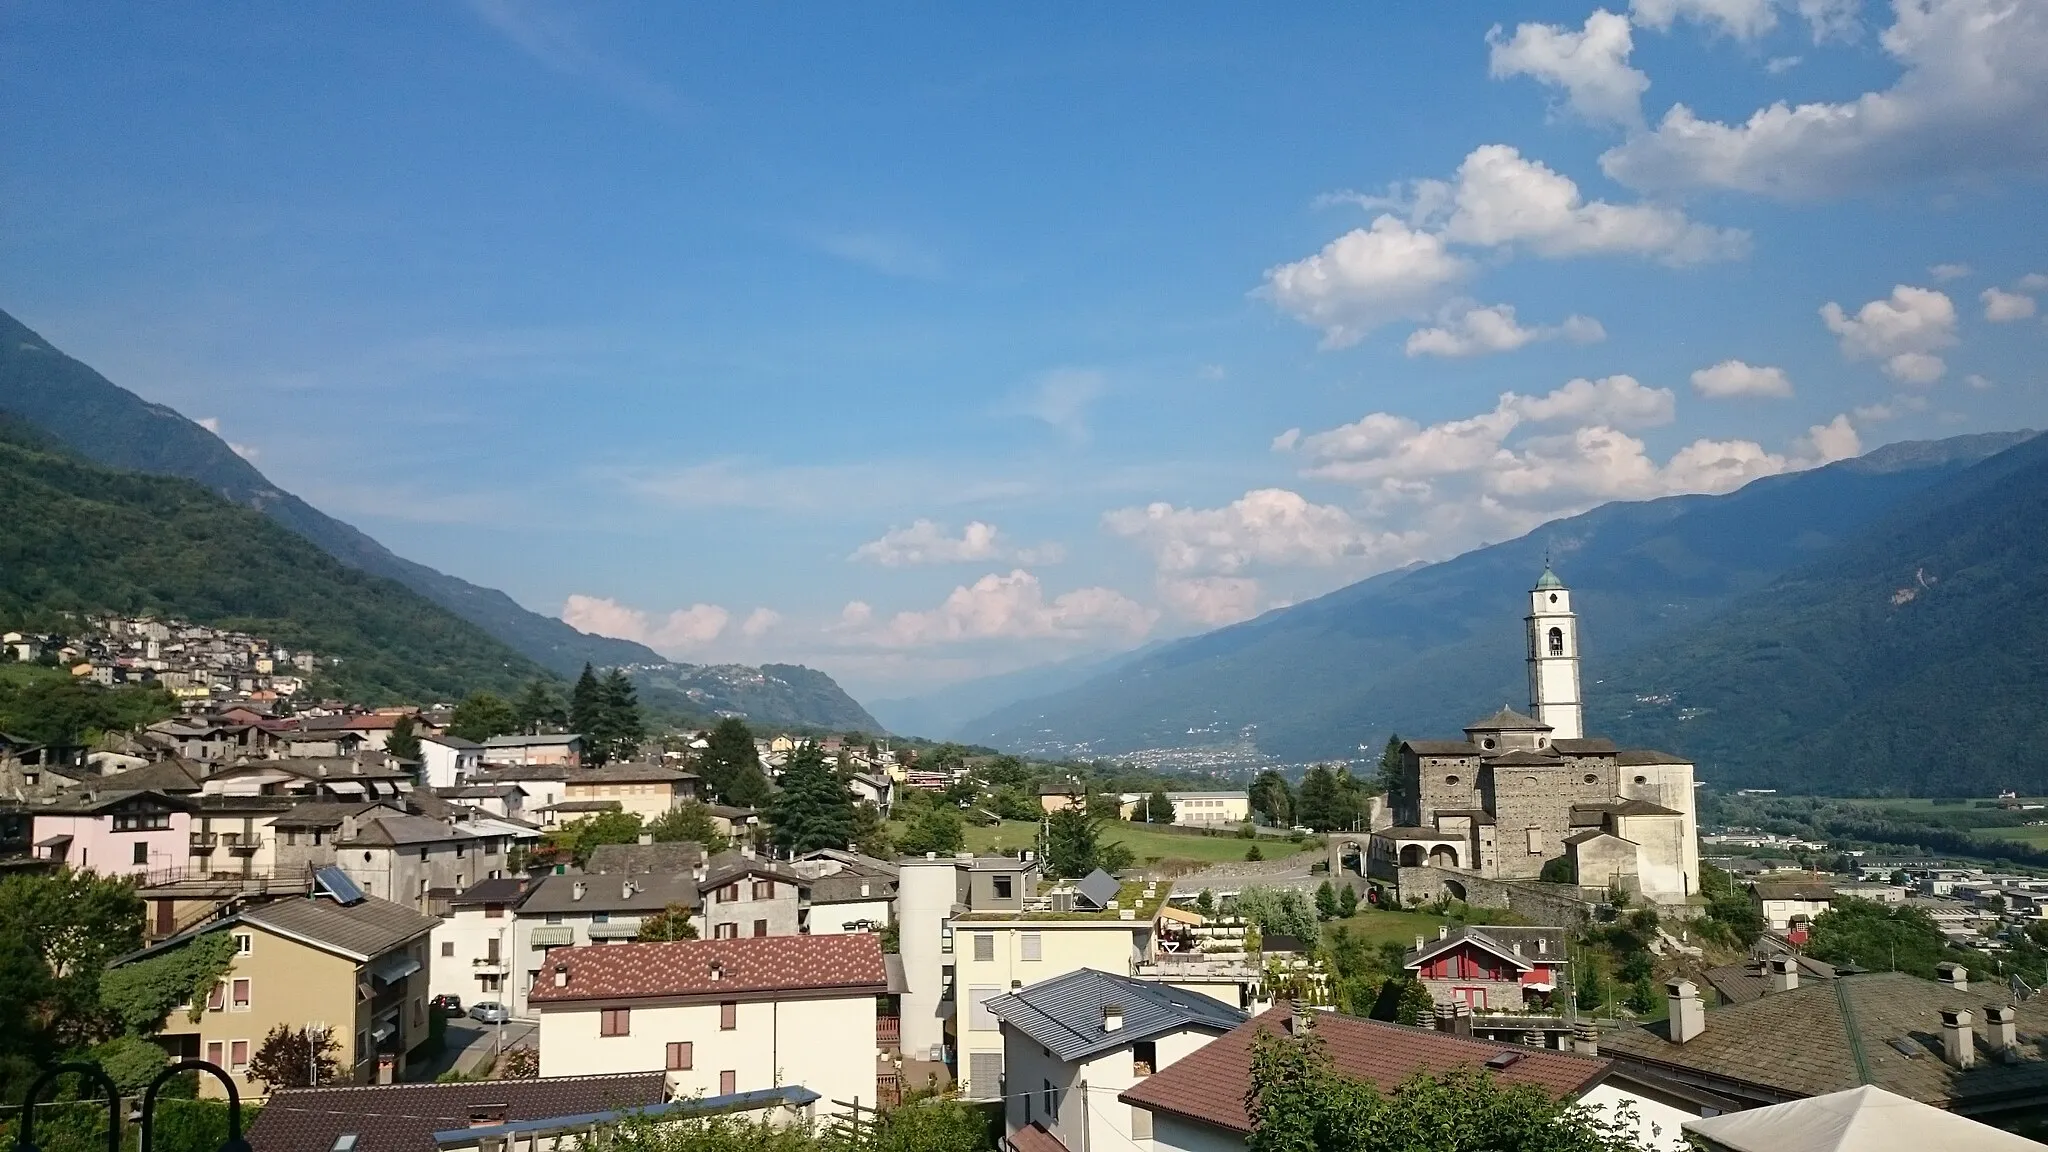 Immagine di Berbenno di Valtellina